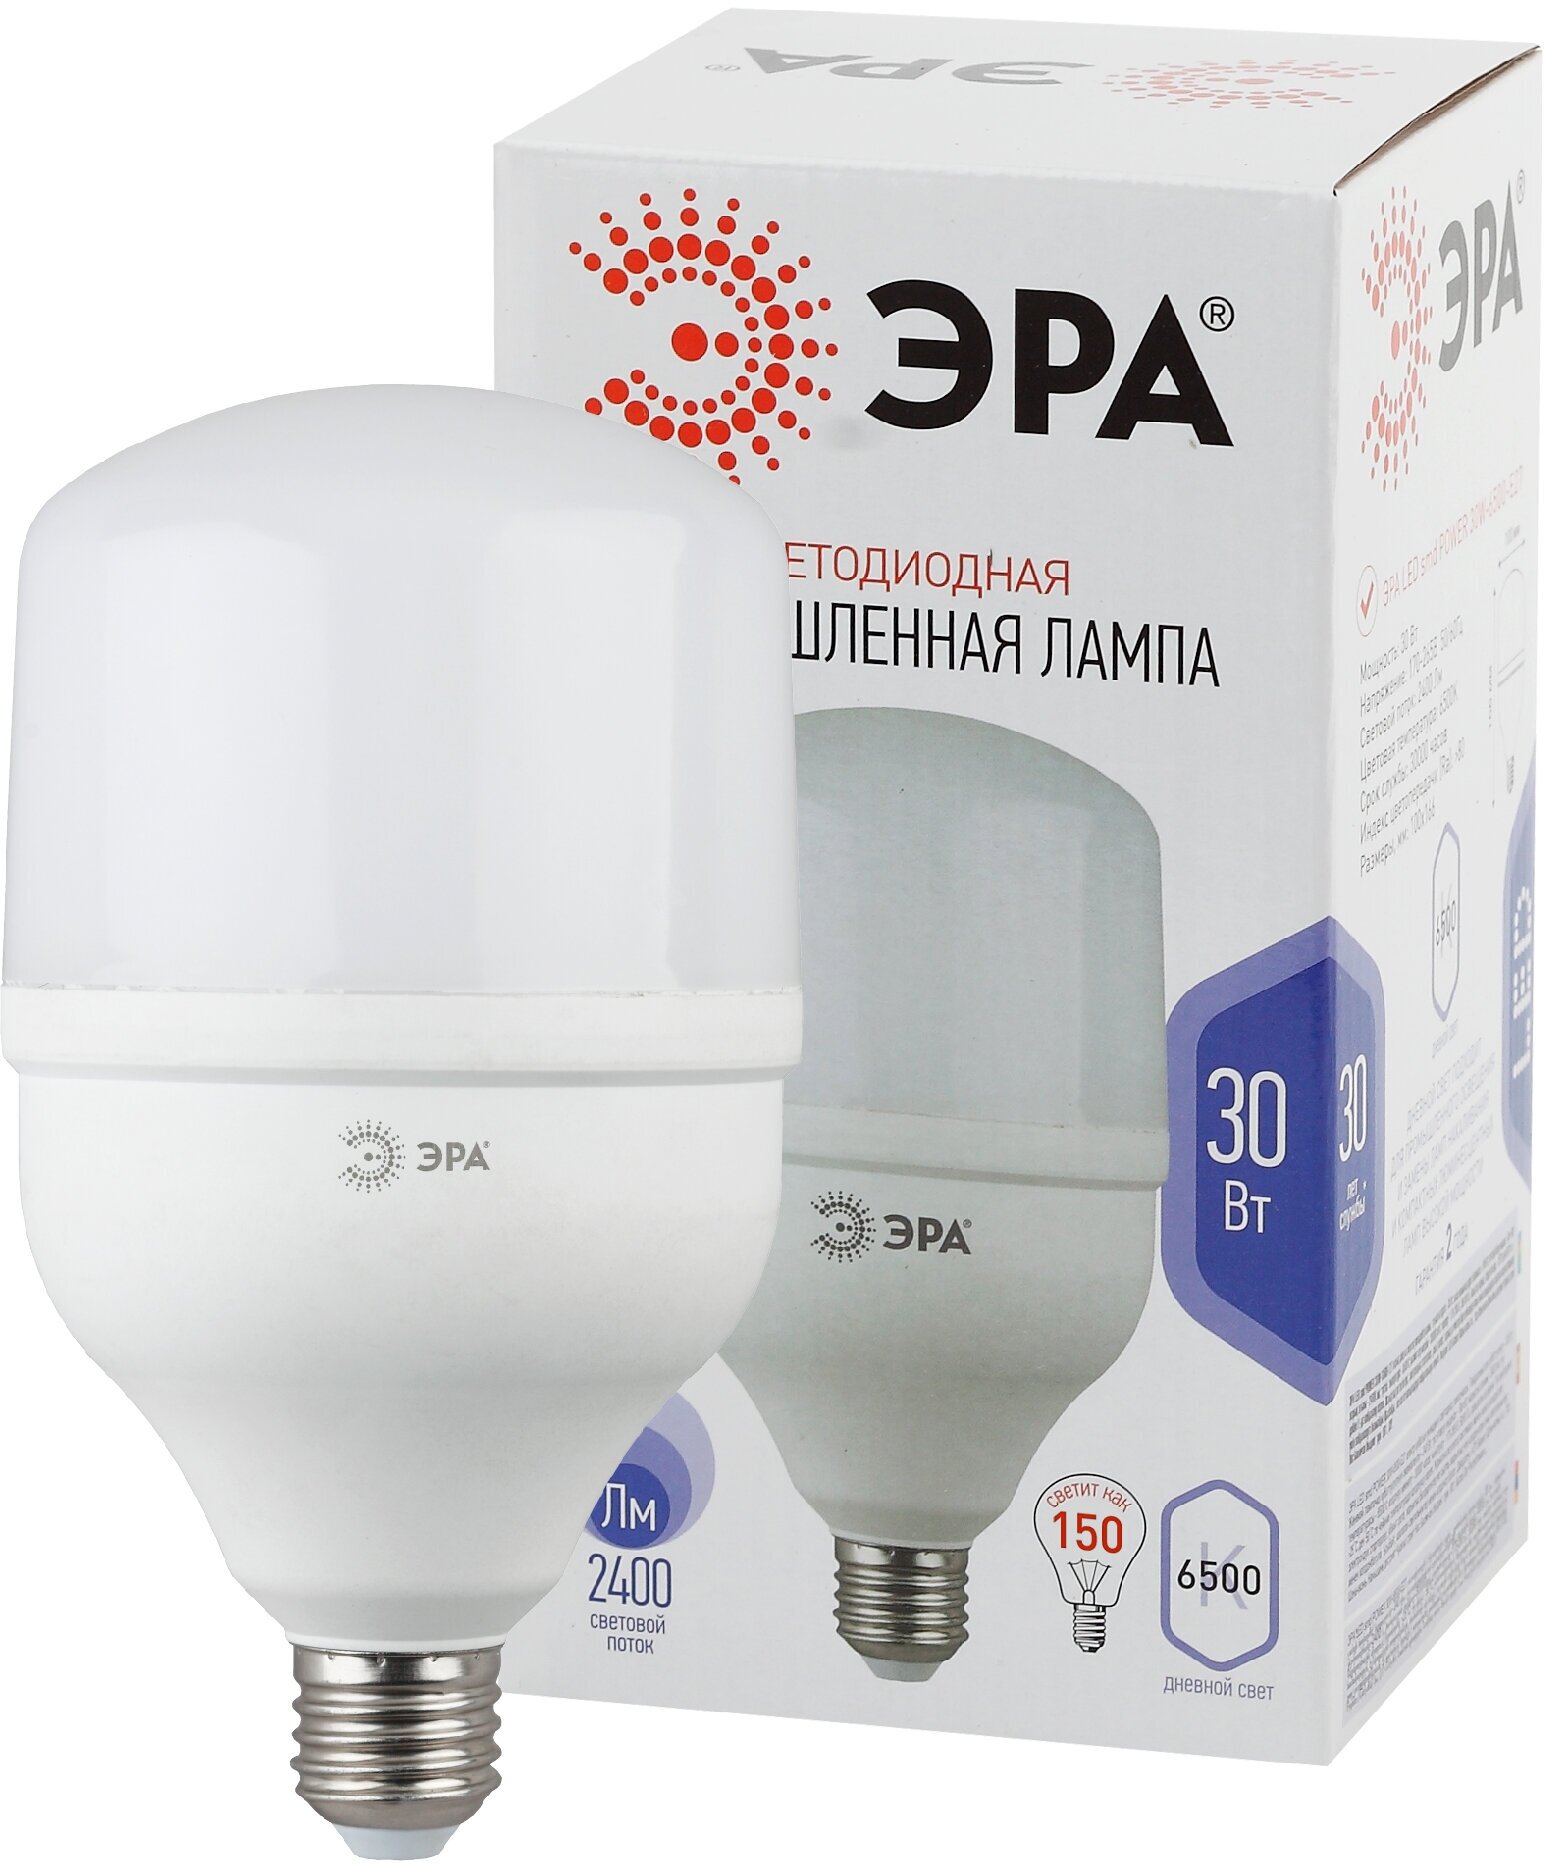 Лампа светодиодная ЭРА STD LED POWER T100-30W-6500-E27 Е27 30 Вт колокол холoдный дневной свет арт. Б0027004 (1 шт.)